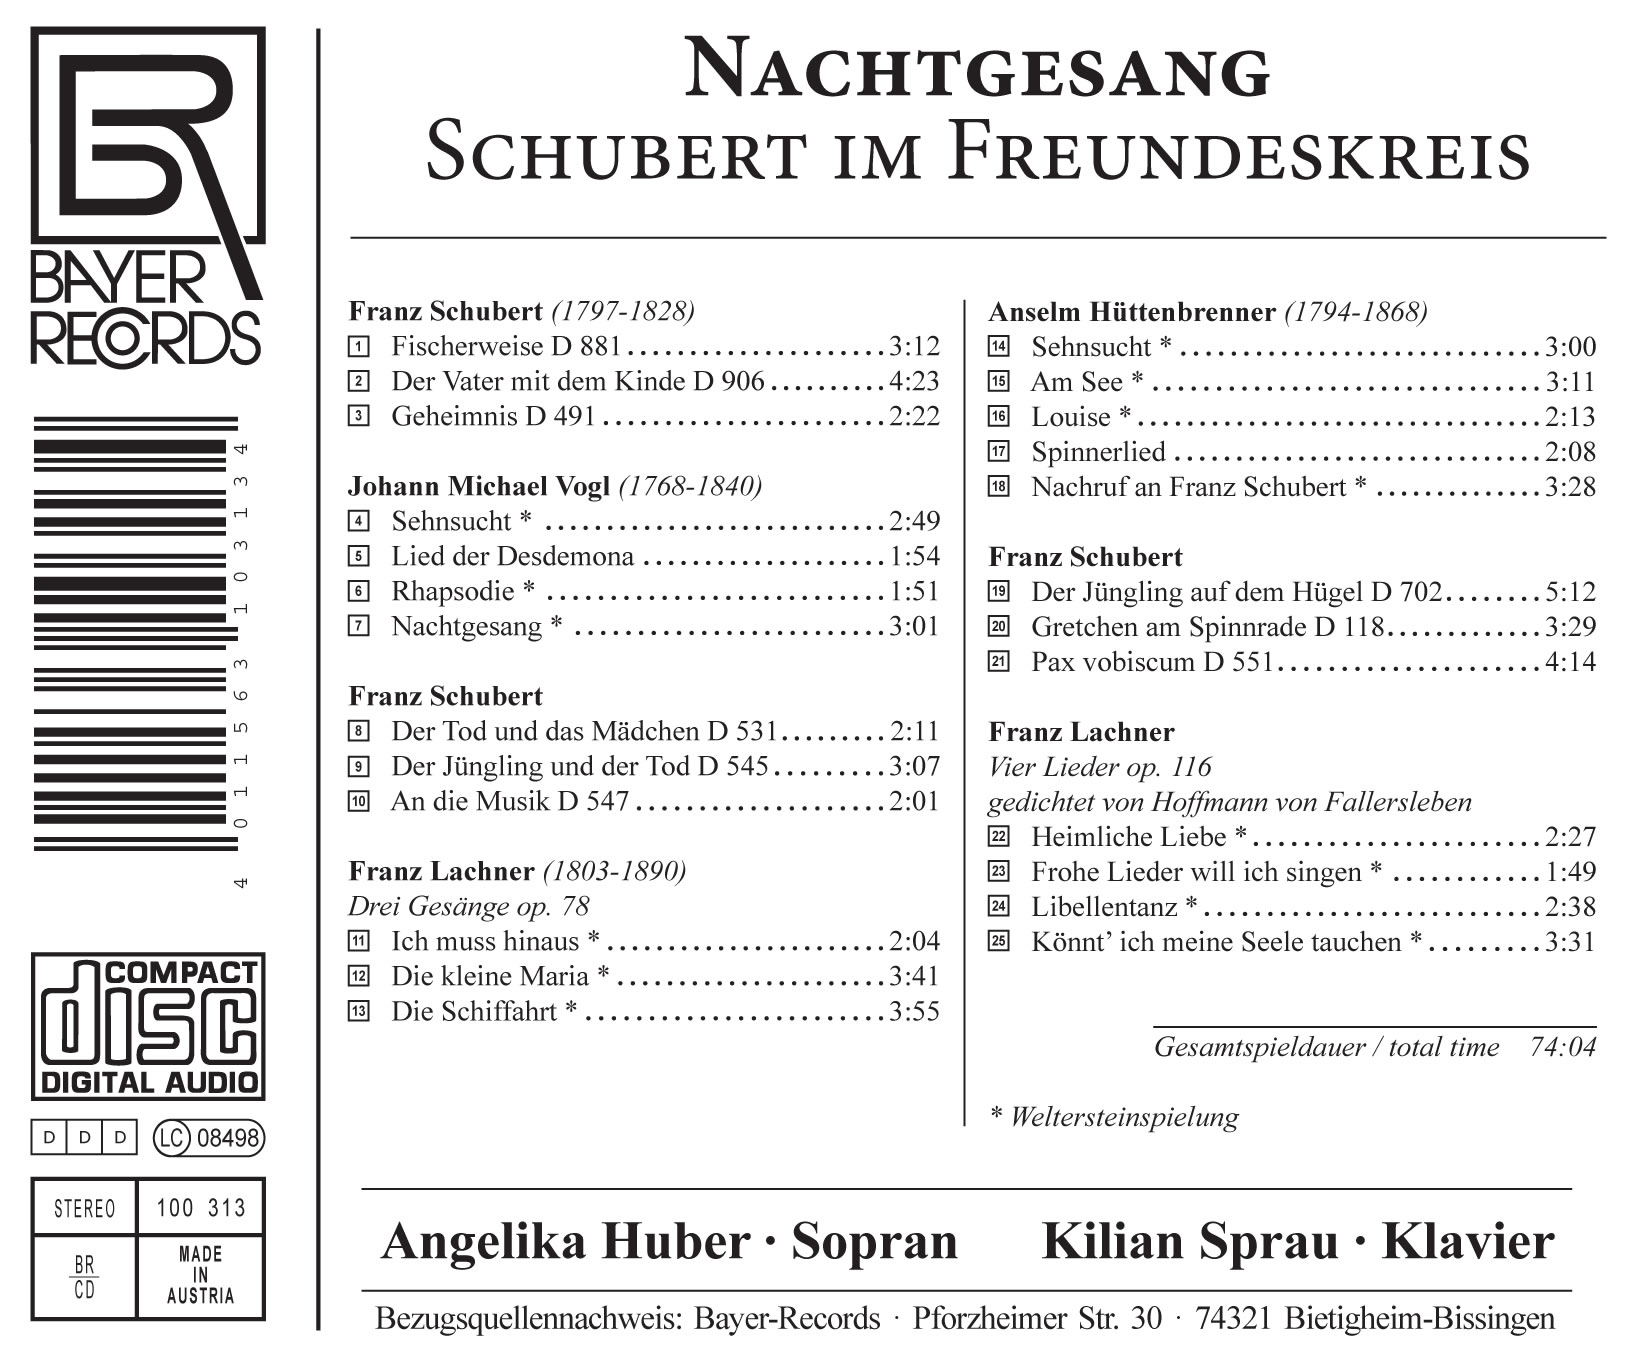 Nachtgesang - Schubert im Freundeskreis